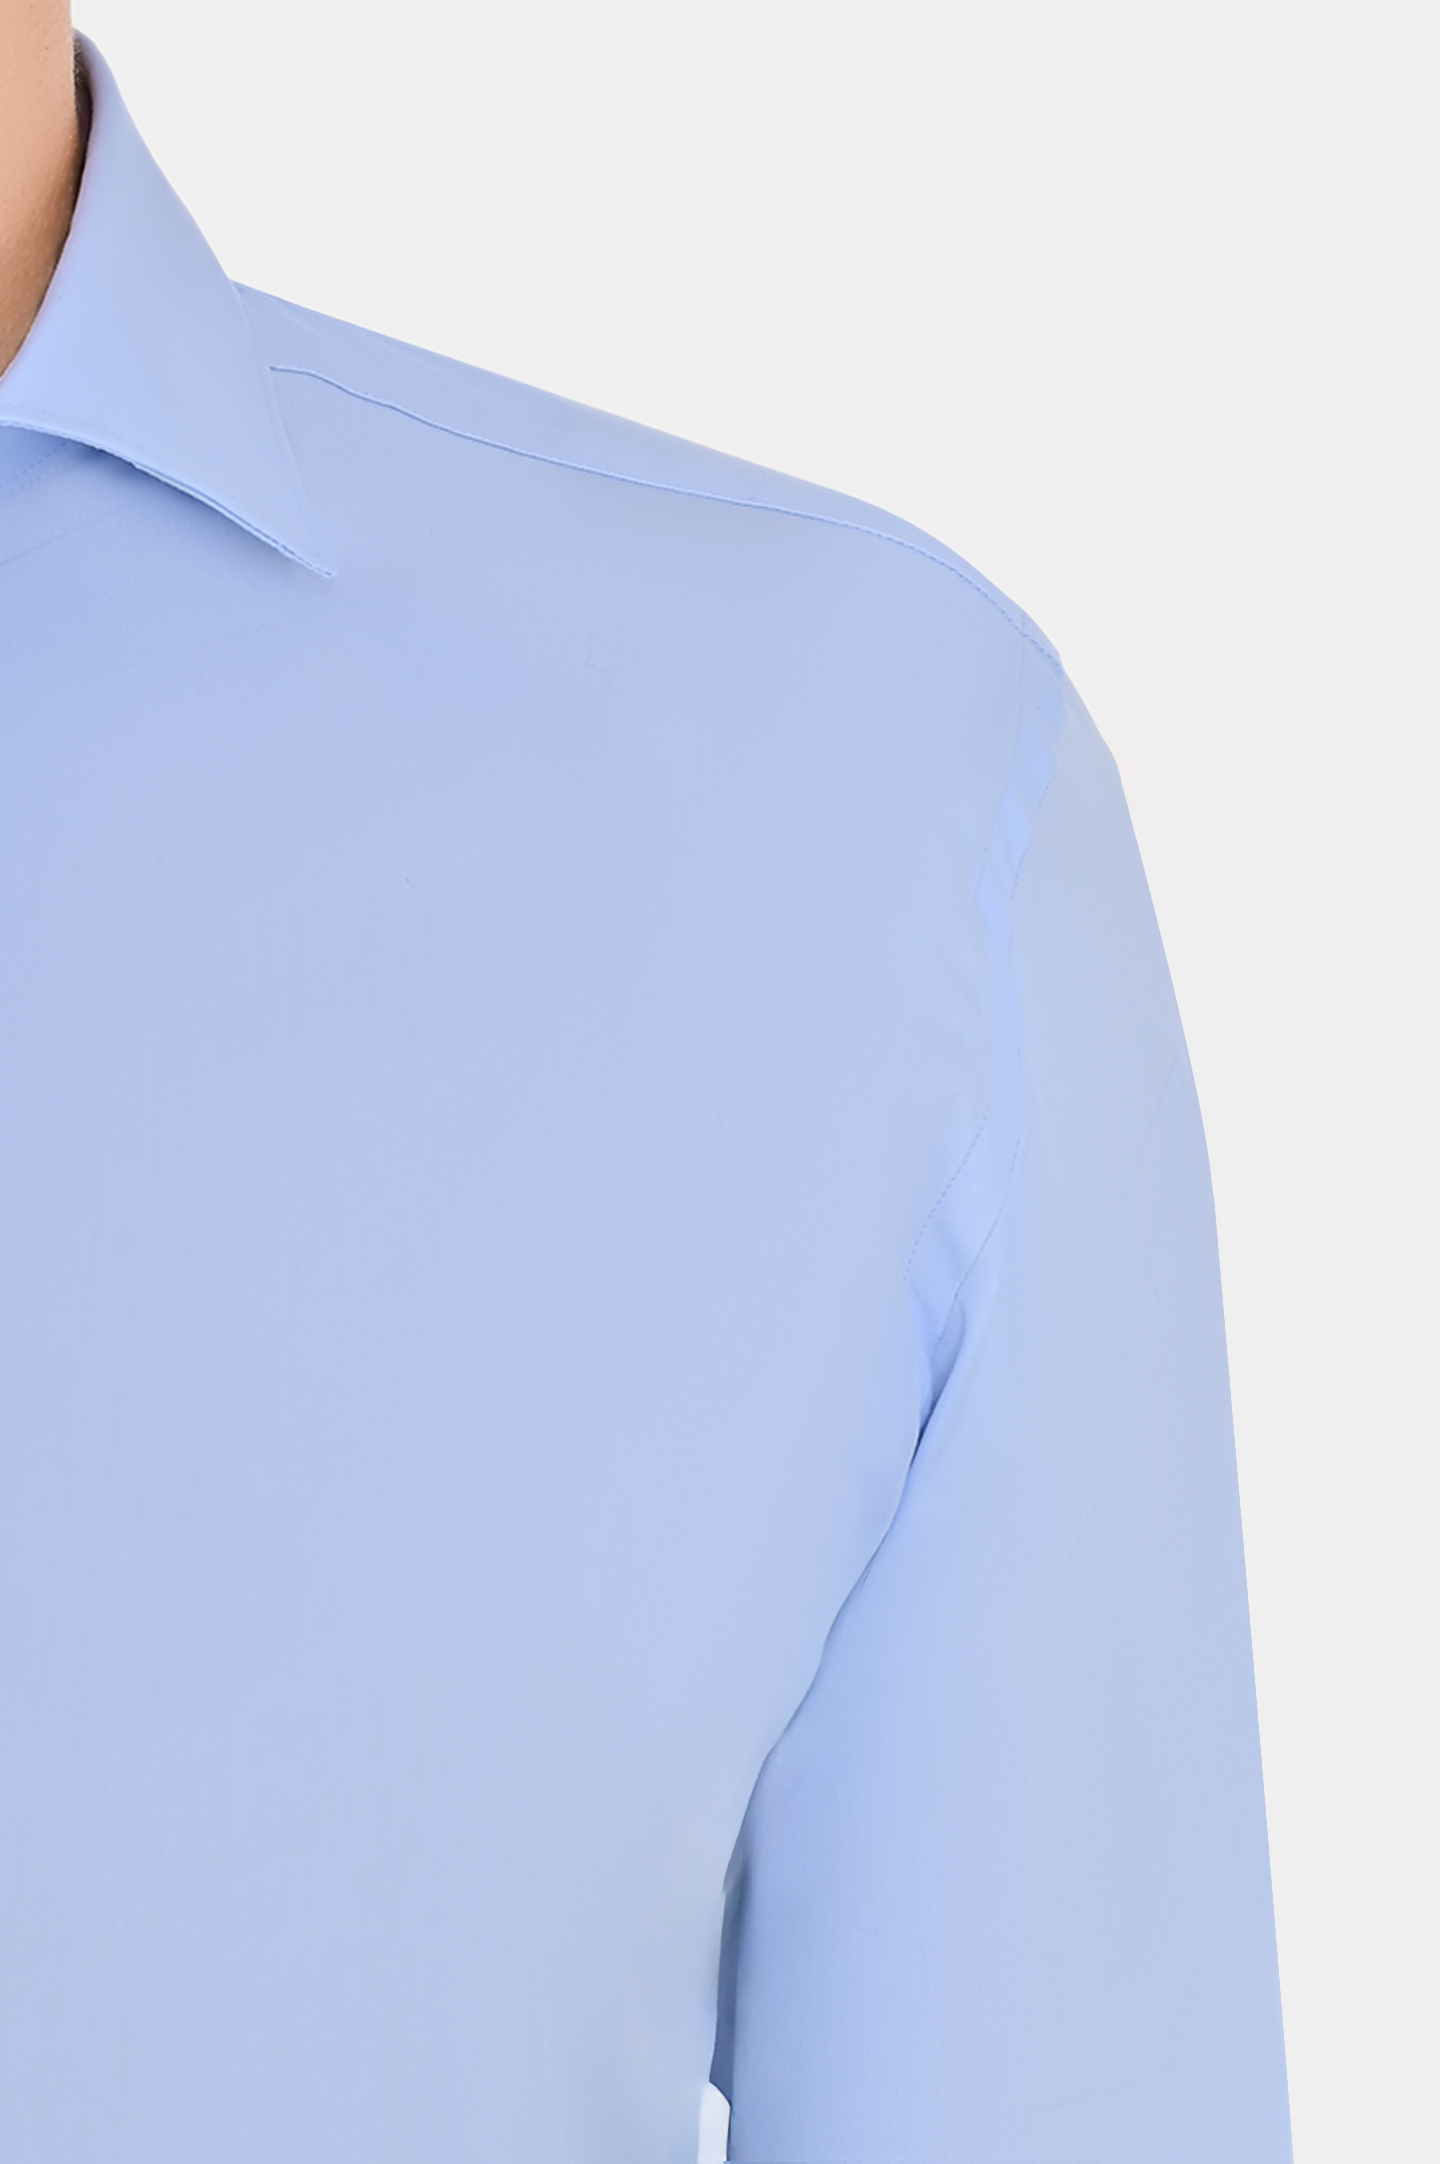 Рубашка из смеси хлопка, полиамида и эластана CANALI GA01222 7C3, цвет: Голубой, Мужской